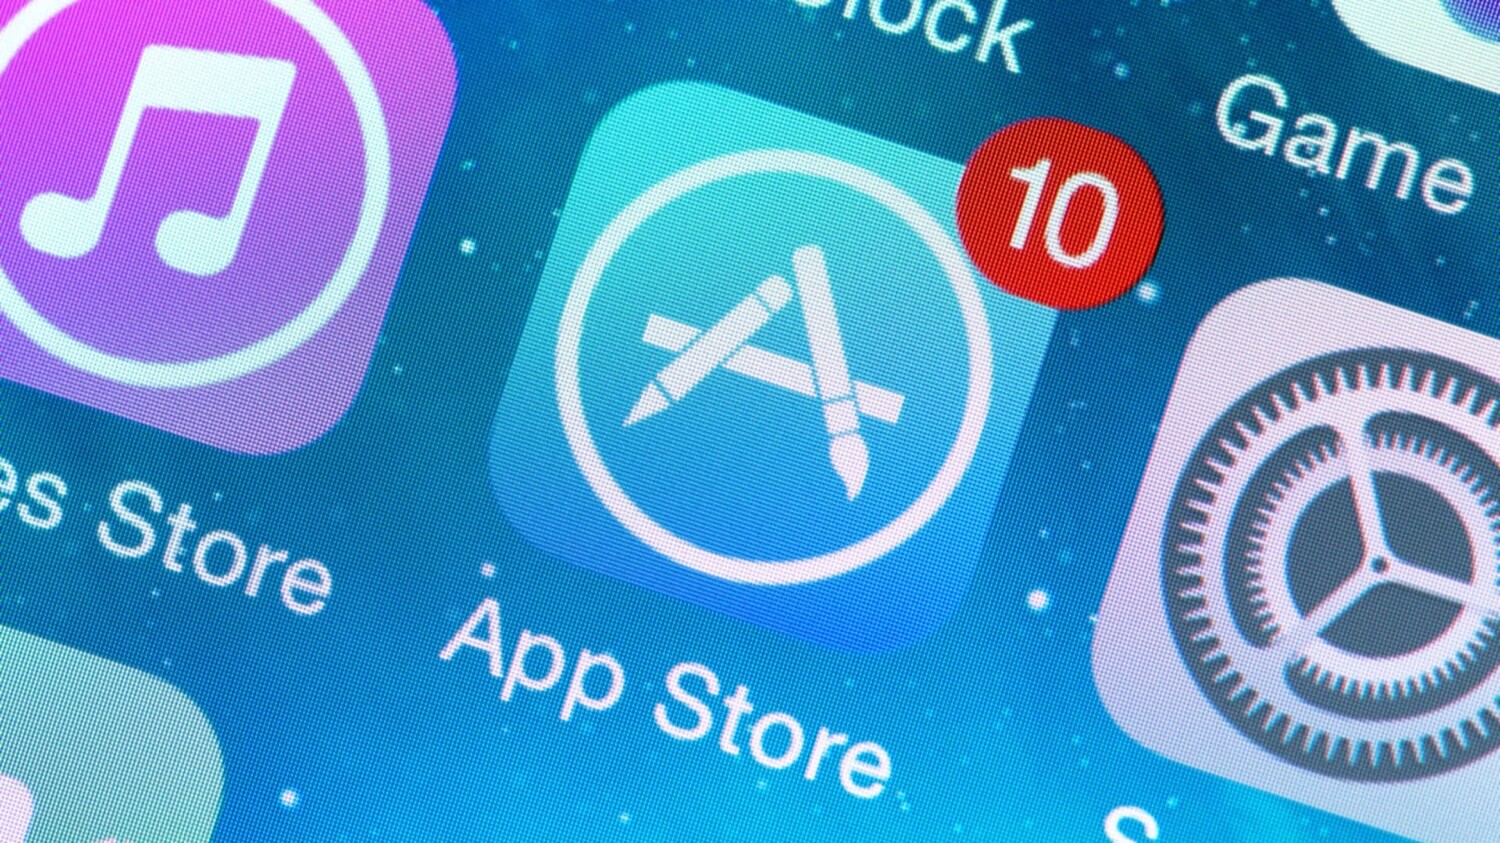 Взломать запасную копию i-устройств с возникновением iOS 10 стало значительно проще